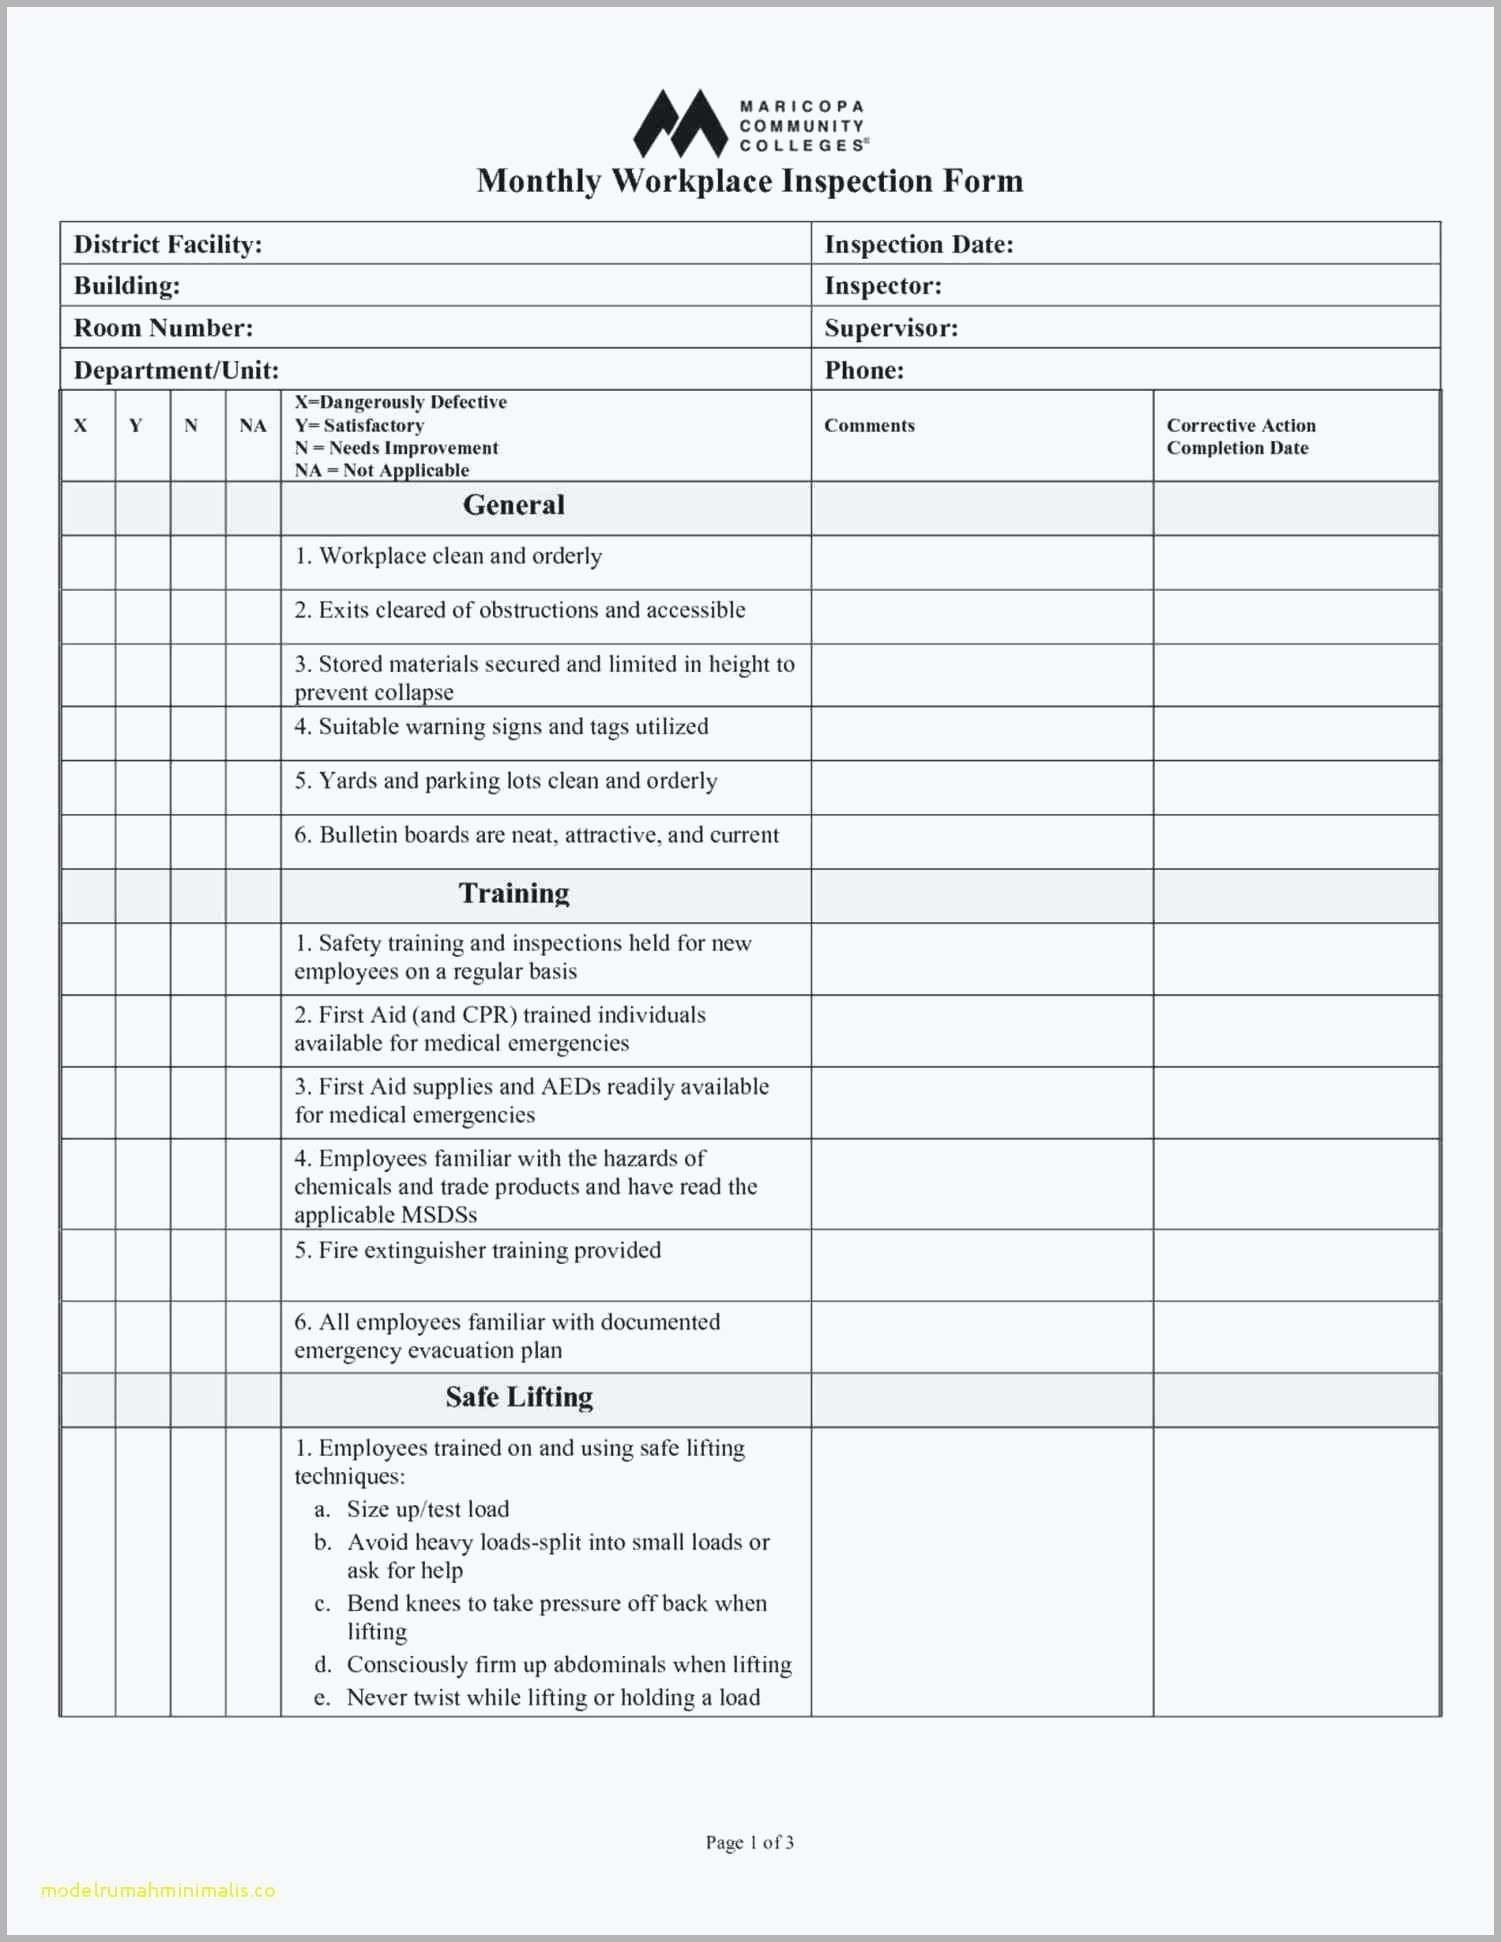 osha safety data sheet template